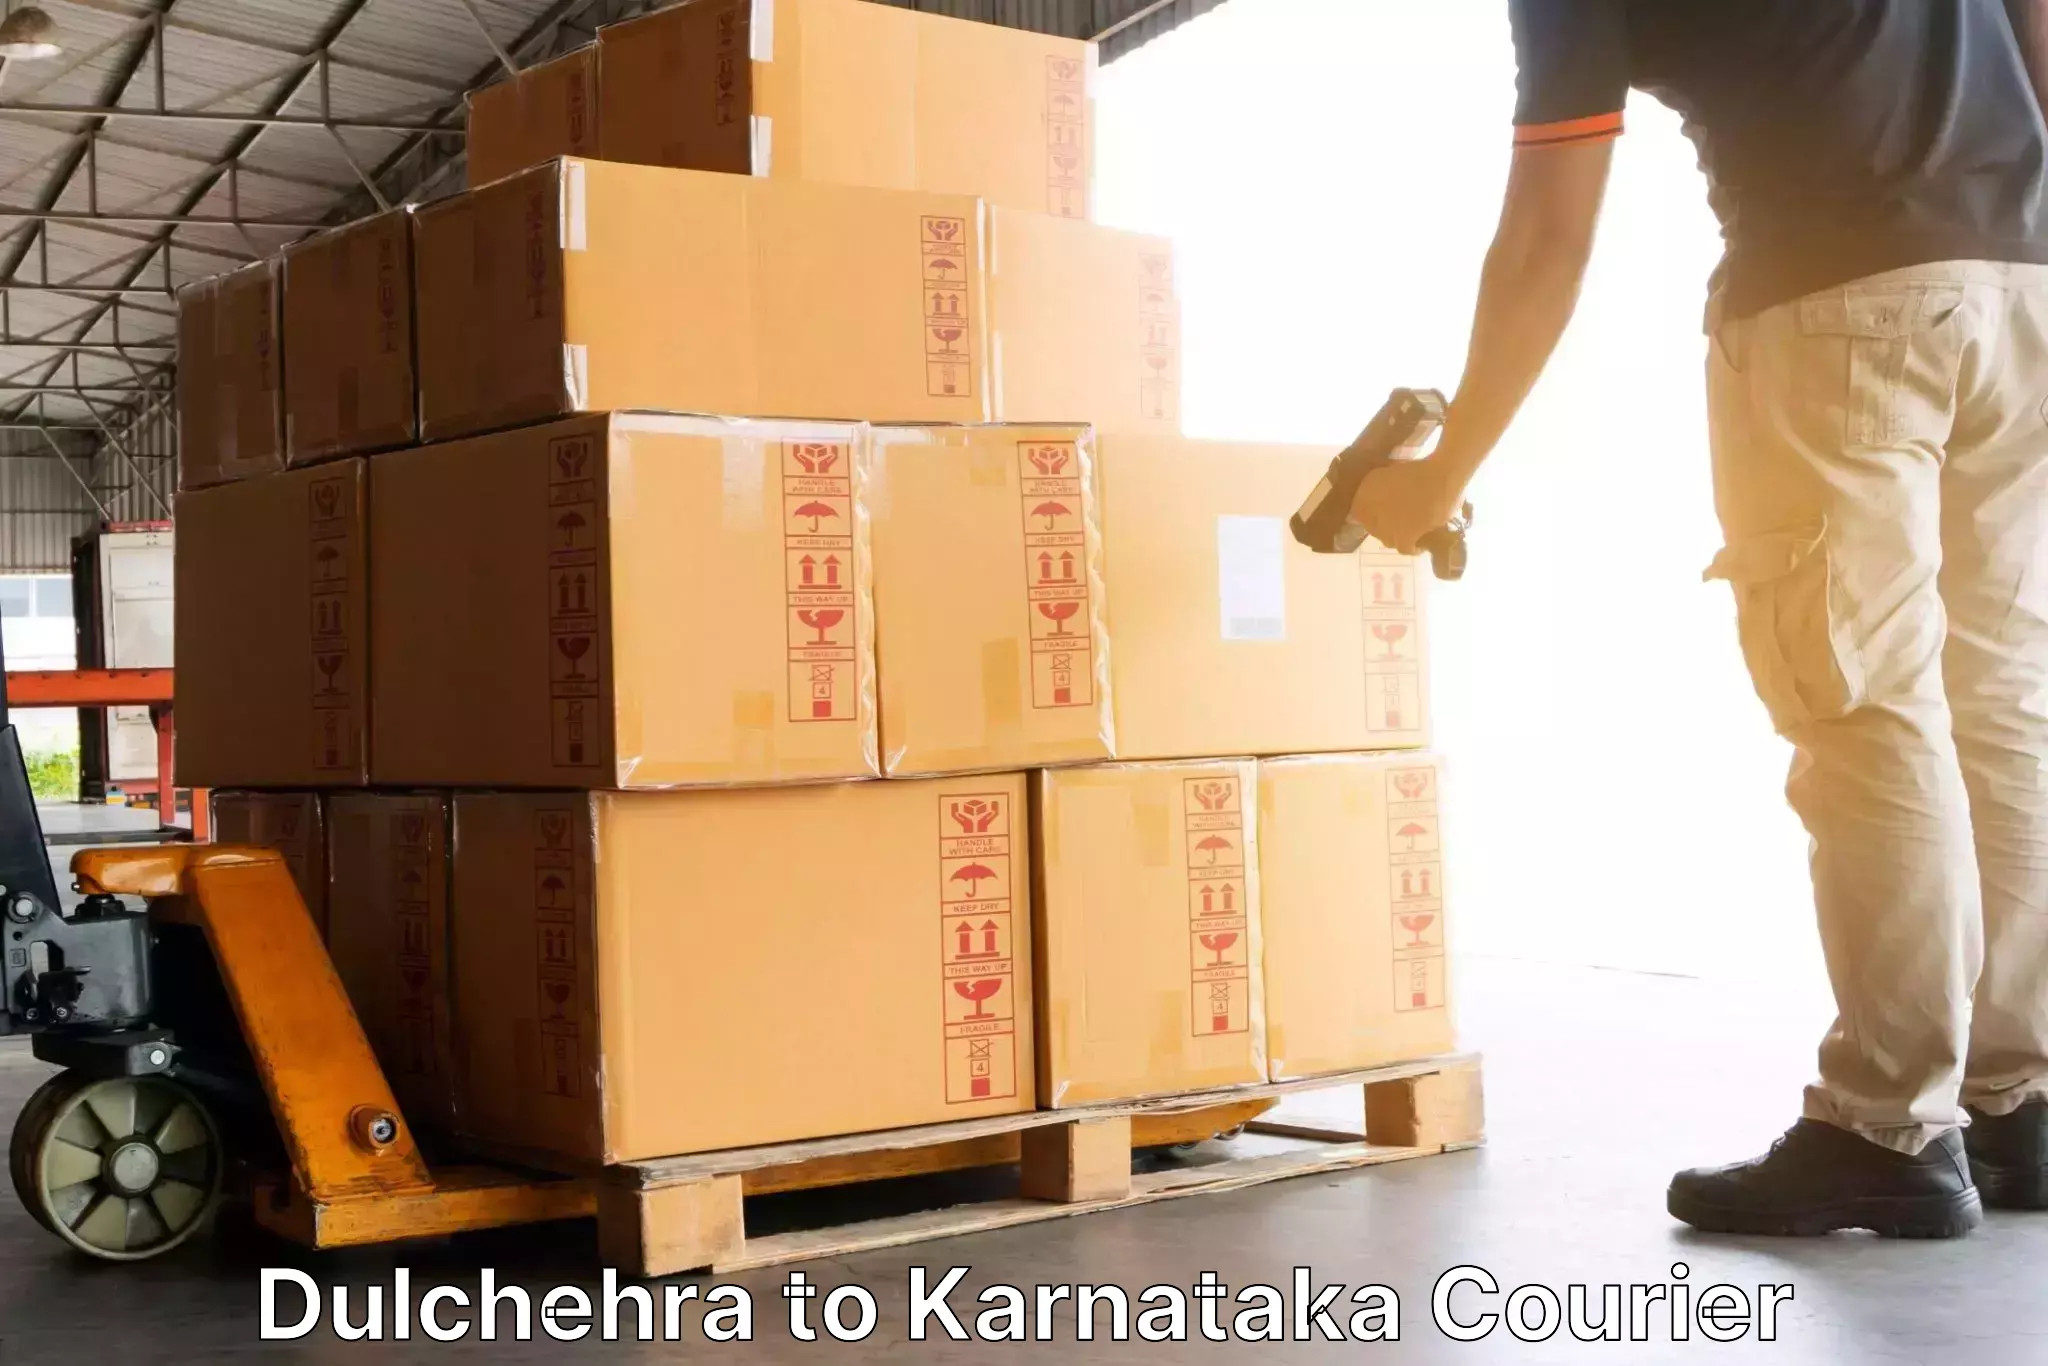 Efficient courier operations Dulchehra to Basavana Bagewadi